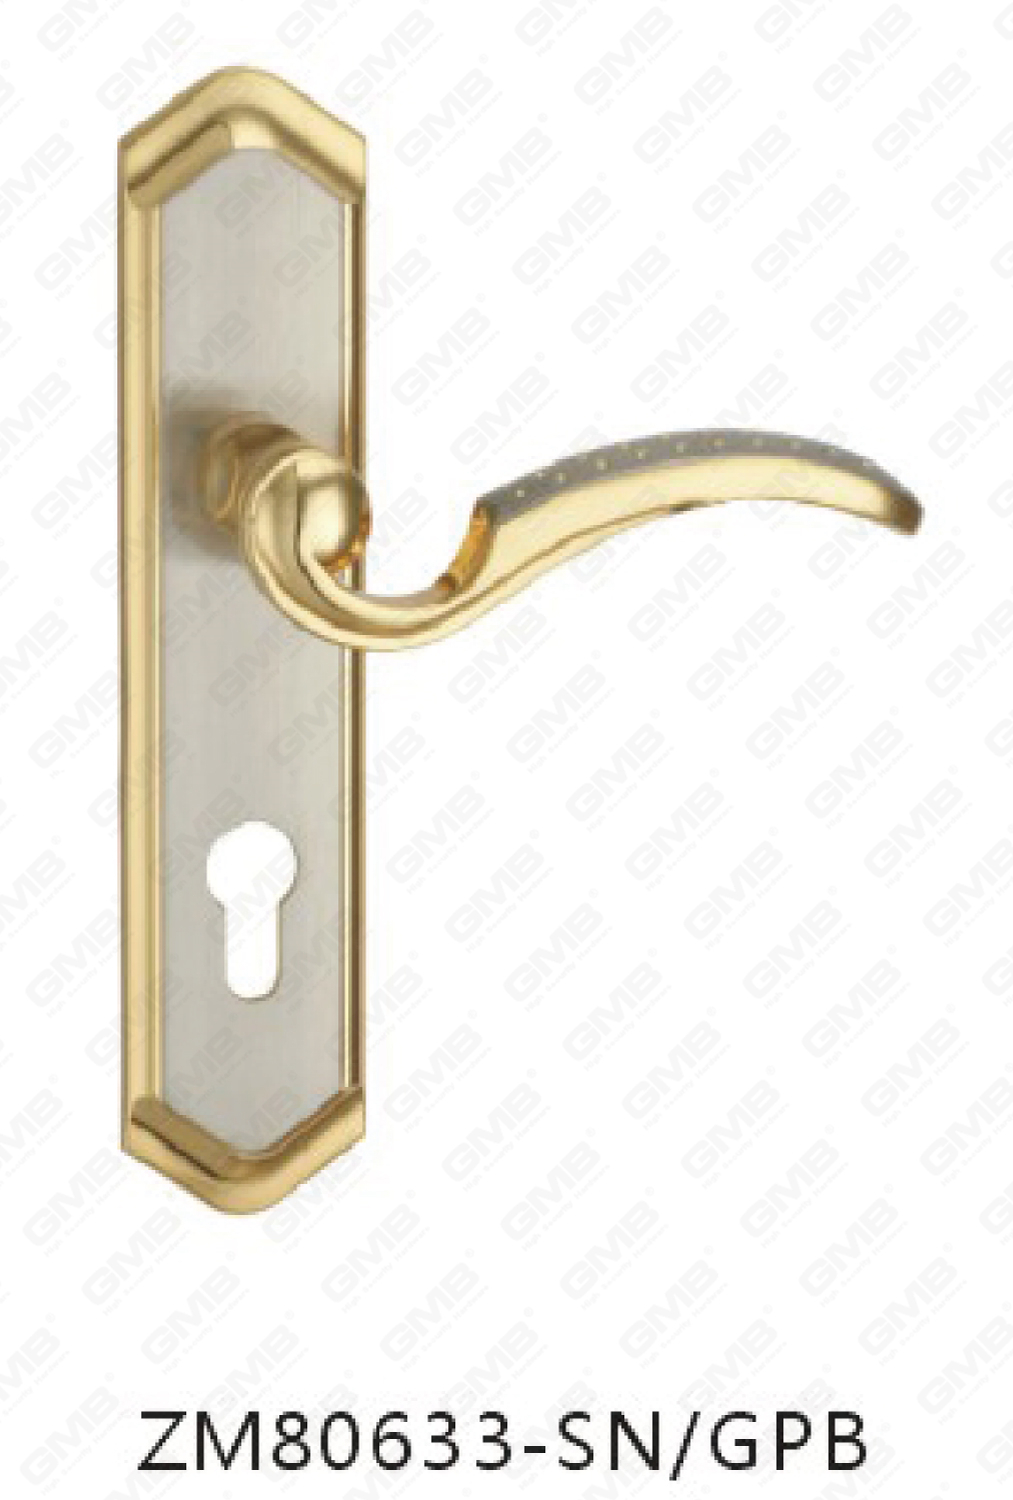 Manija de la puerta Tirador de la puerta de madera Manija de la cerradura de la manija de la puerta en la placa para la cerradura de embutir por aleación de zinc o manija de la placa de la puerta de acero (ZM80633-SN&GPB)